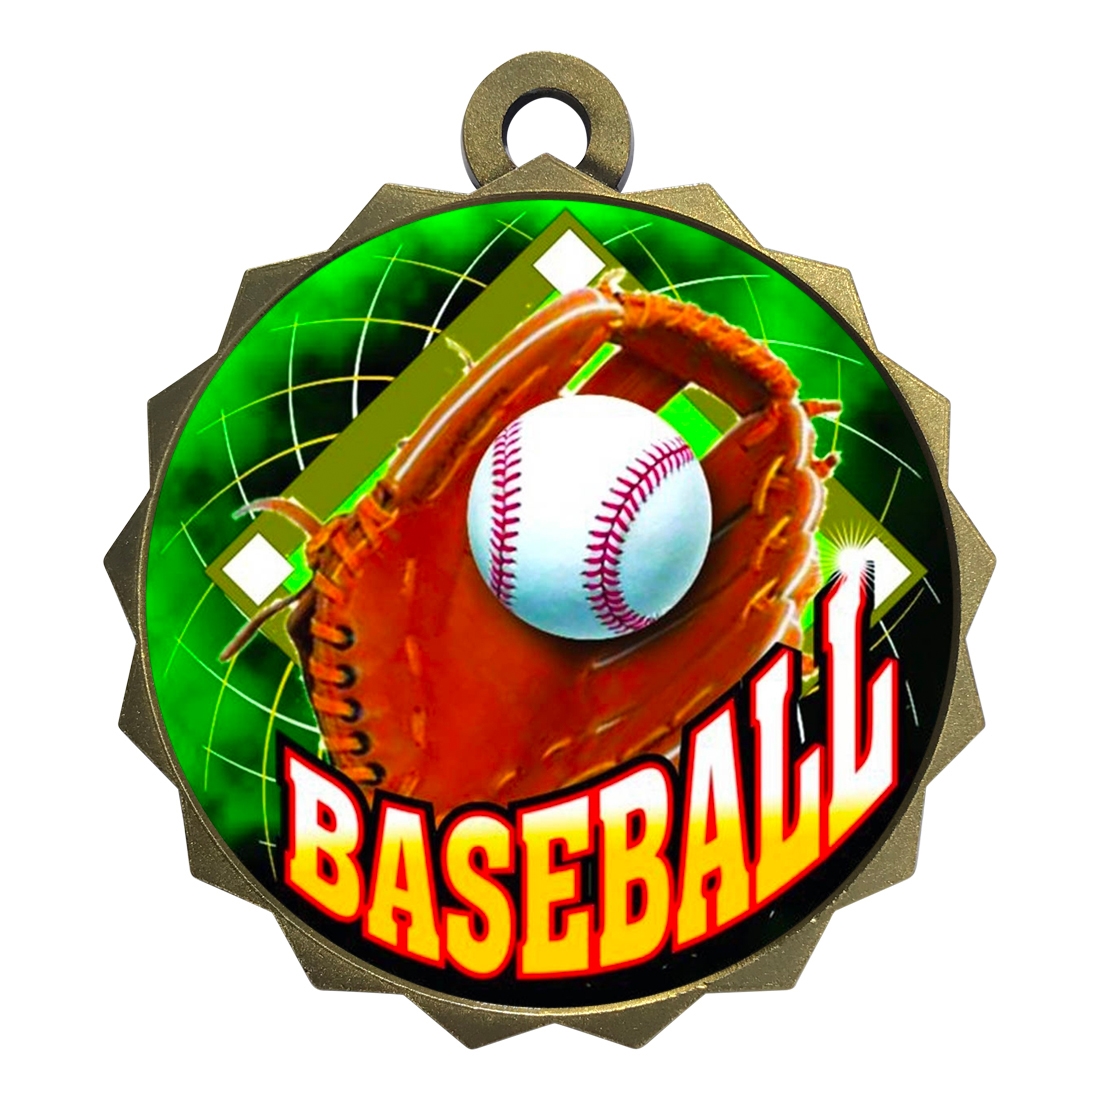 2-1/4" Baseball Medal